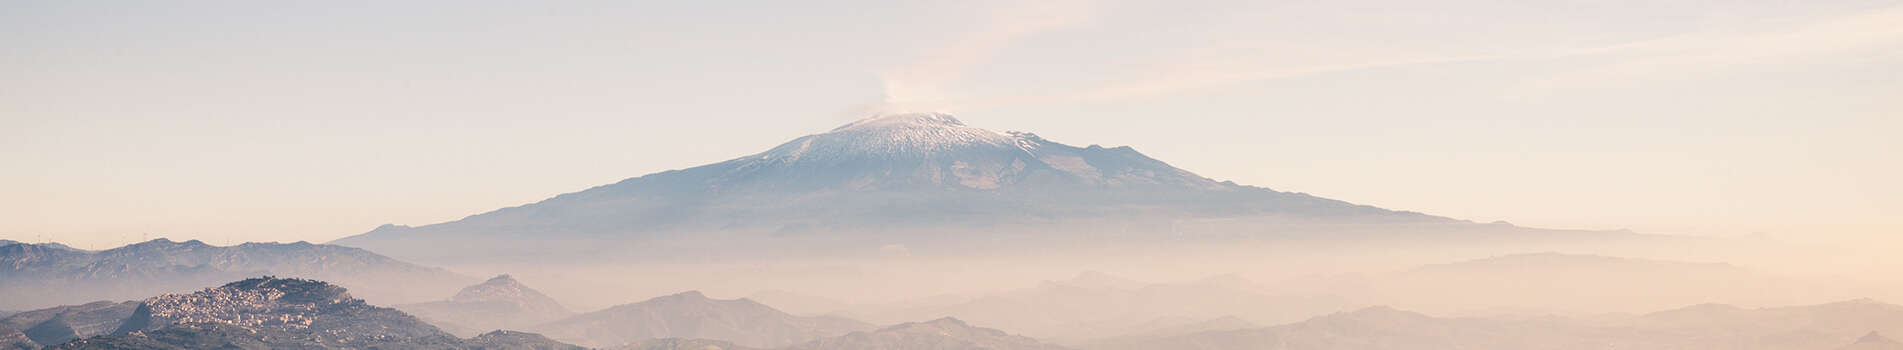 Mt. Etna & Modica